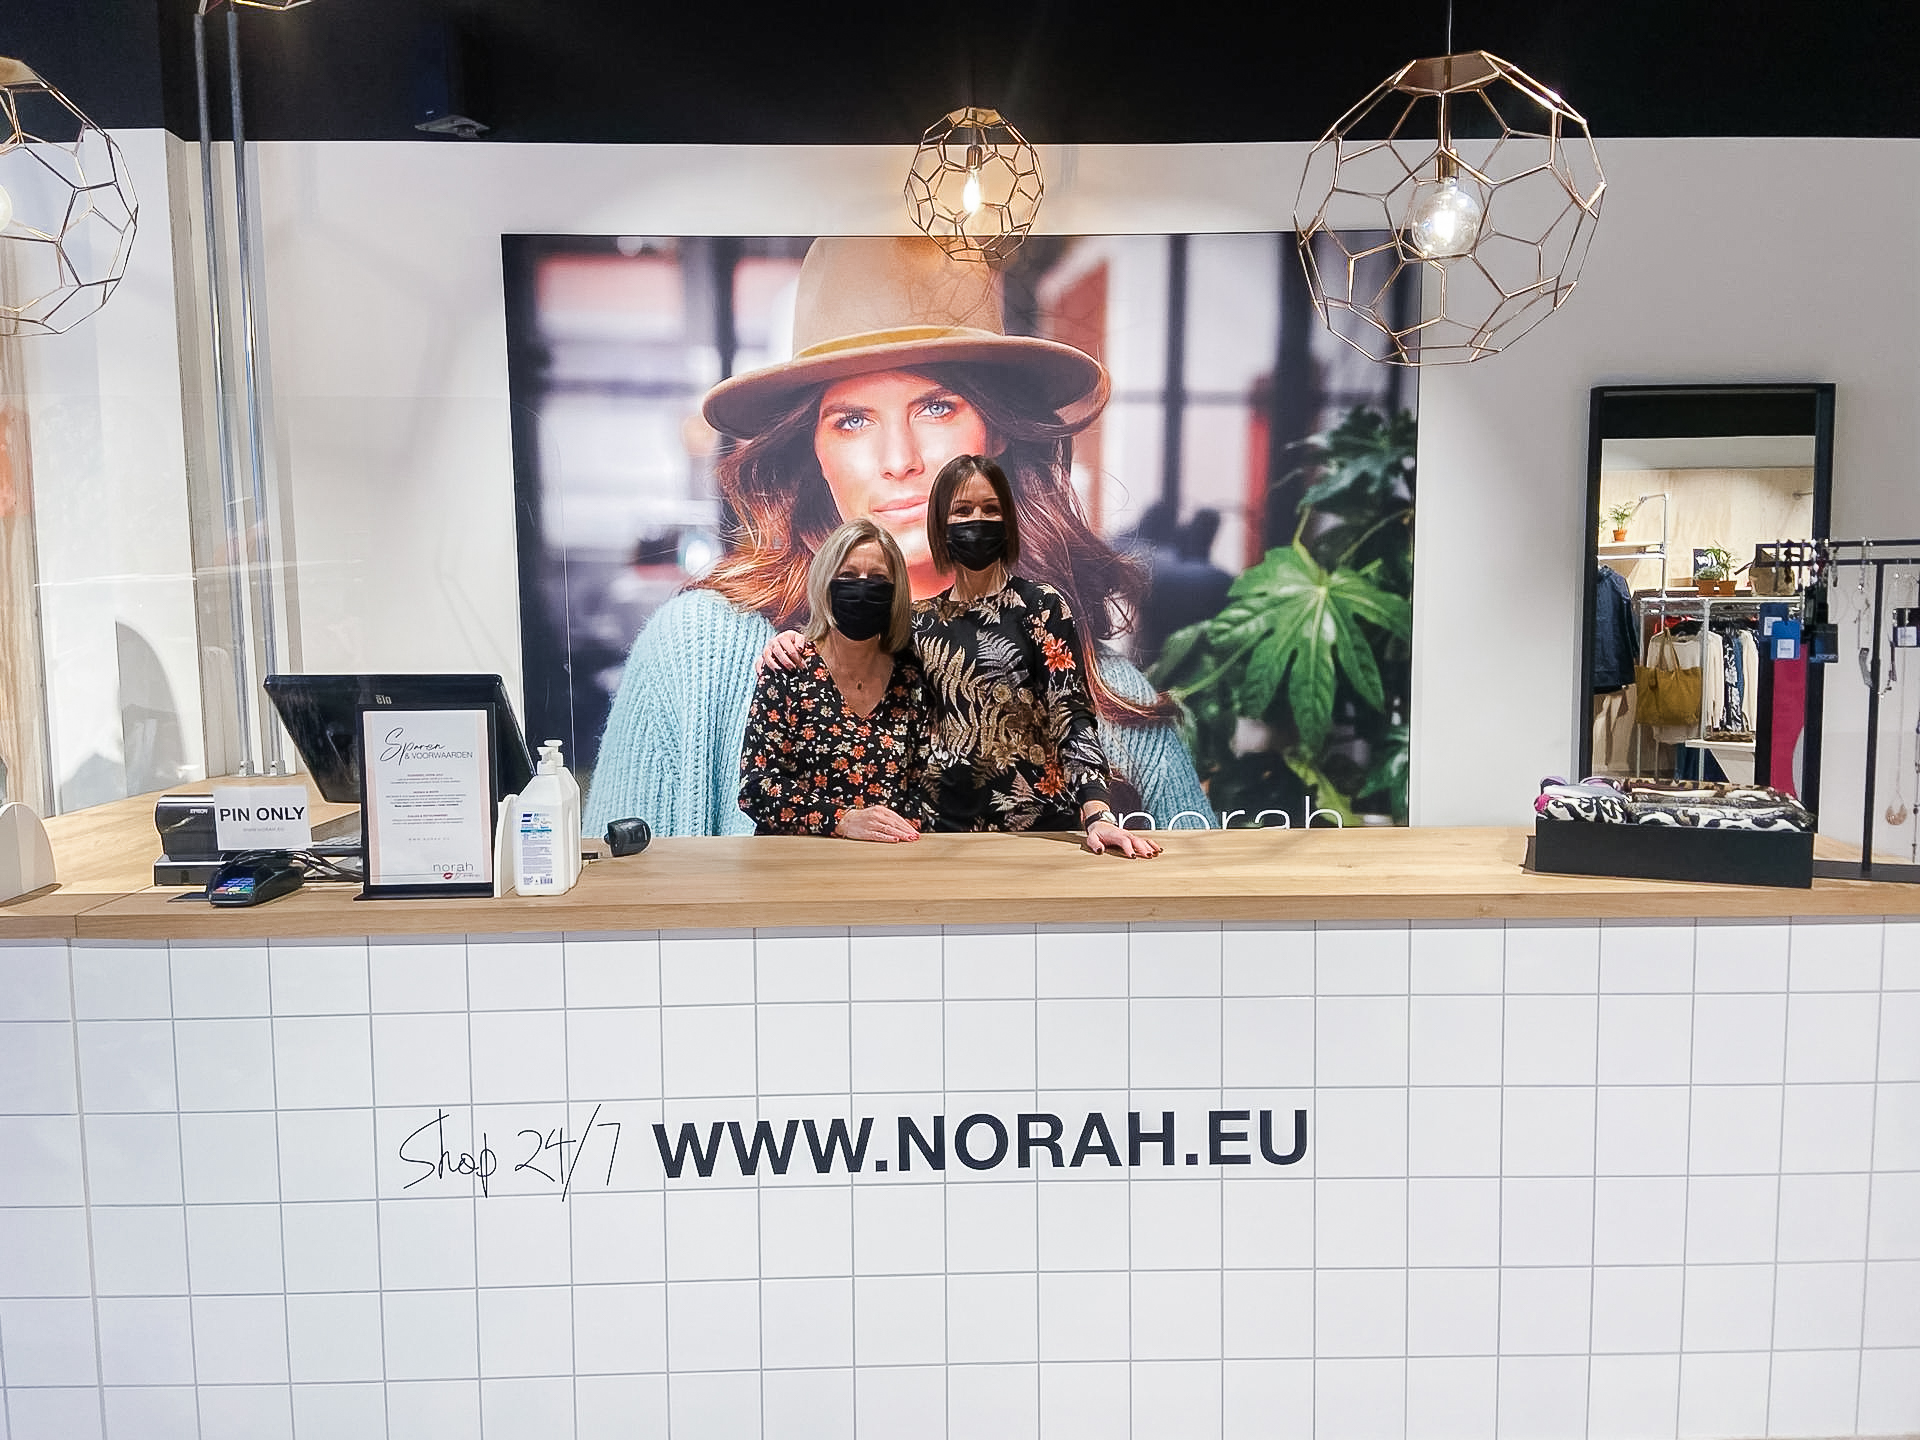 Indica taart Slang Kledingwinkel Norah opent winkel in Geel | Geel Centrum